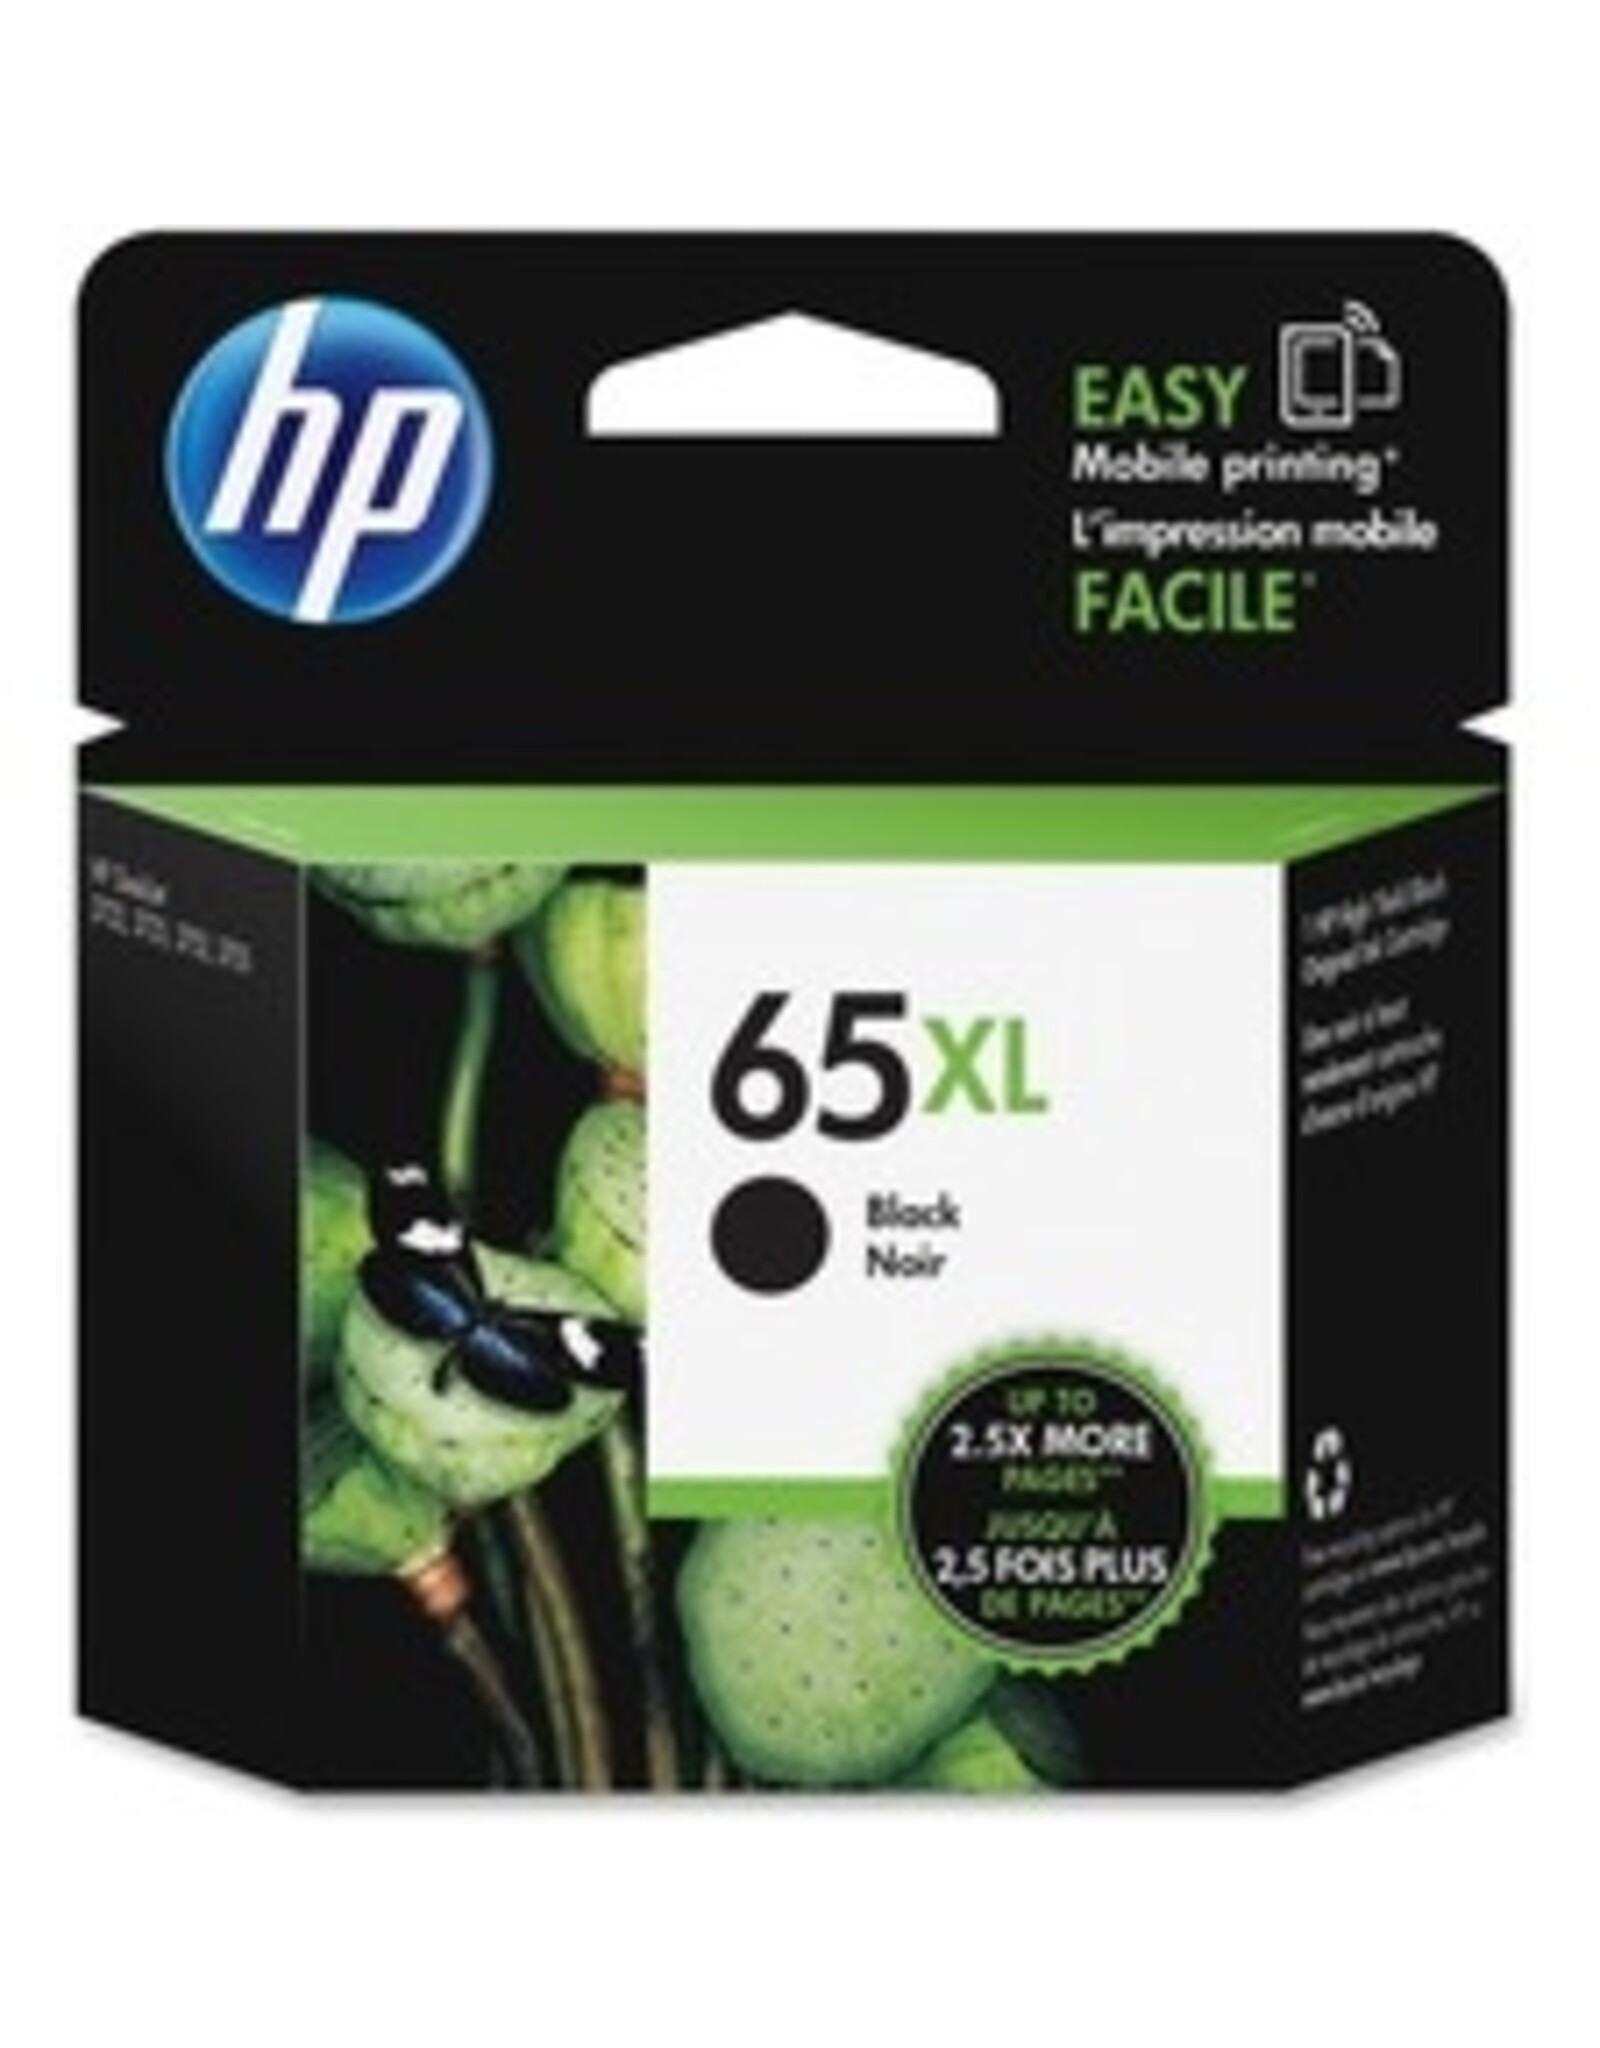 HP HP 65XL Black Ink Cartridge